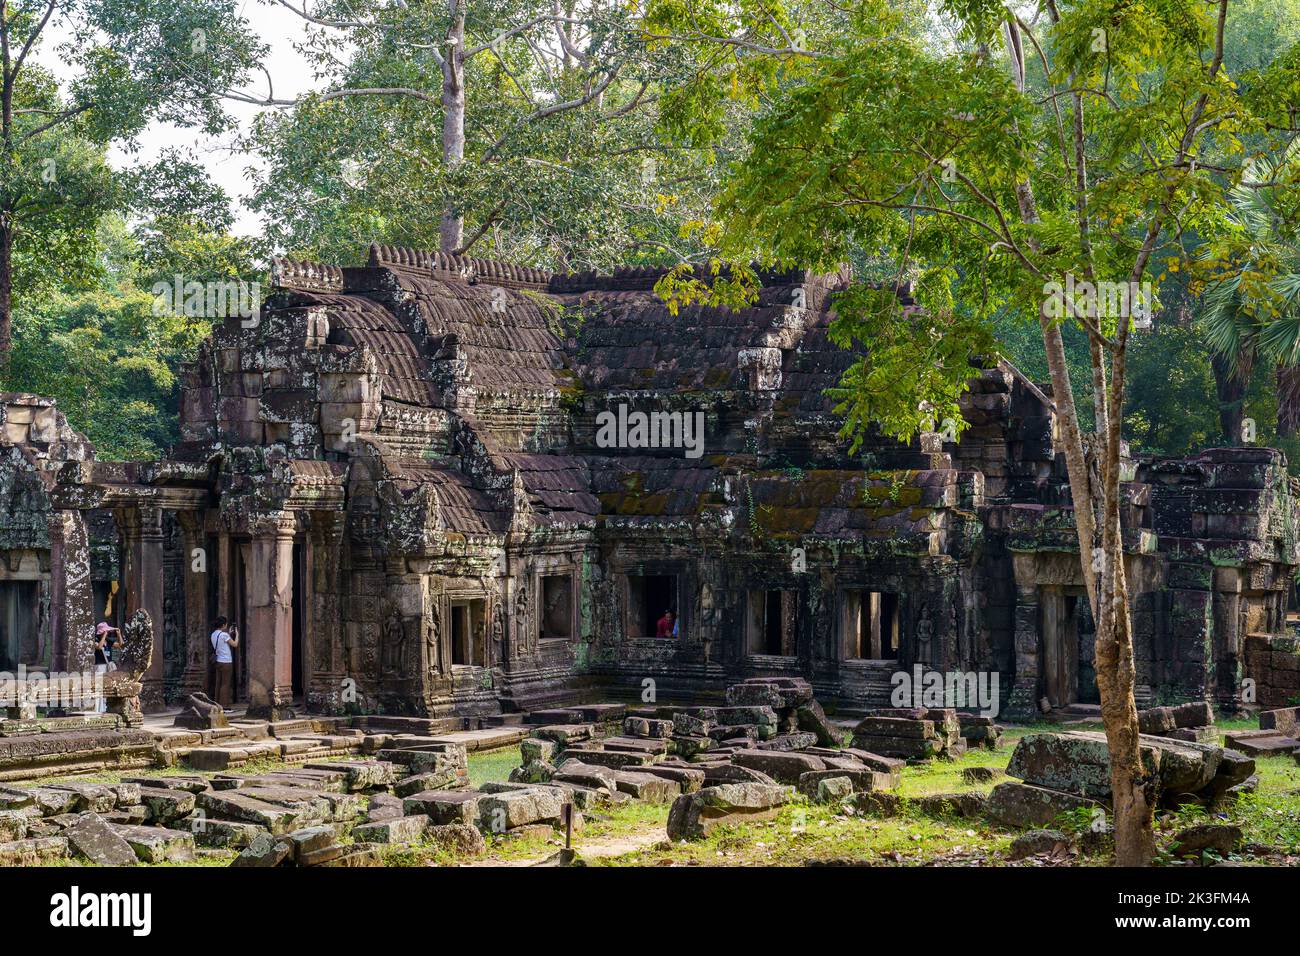 Cambodge. Province de Siem Reap. Le parc archéologique d'Angkor. Les anciennes ruines du temple Banteay Kdei Banque D'Images